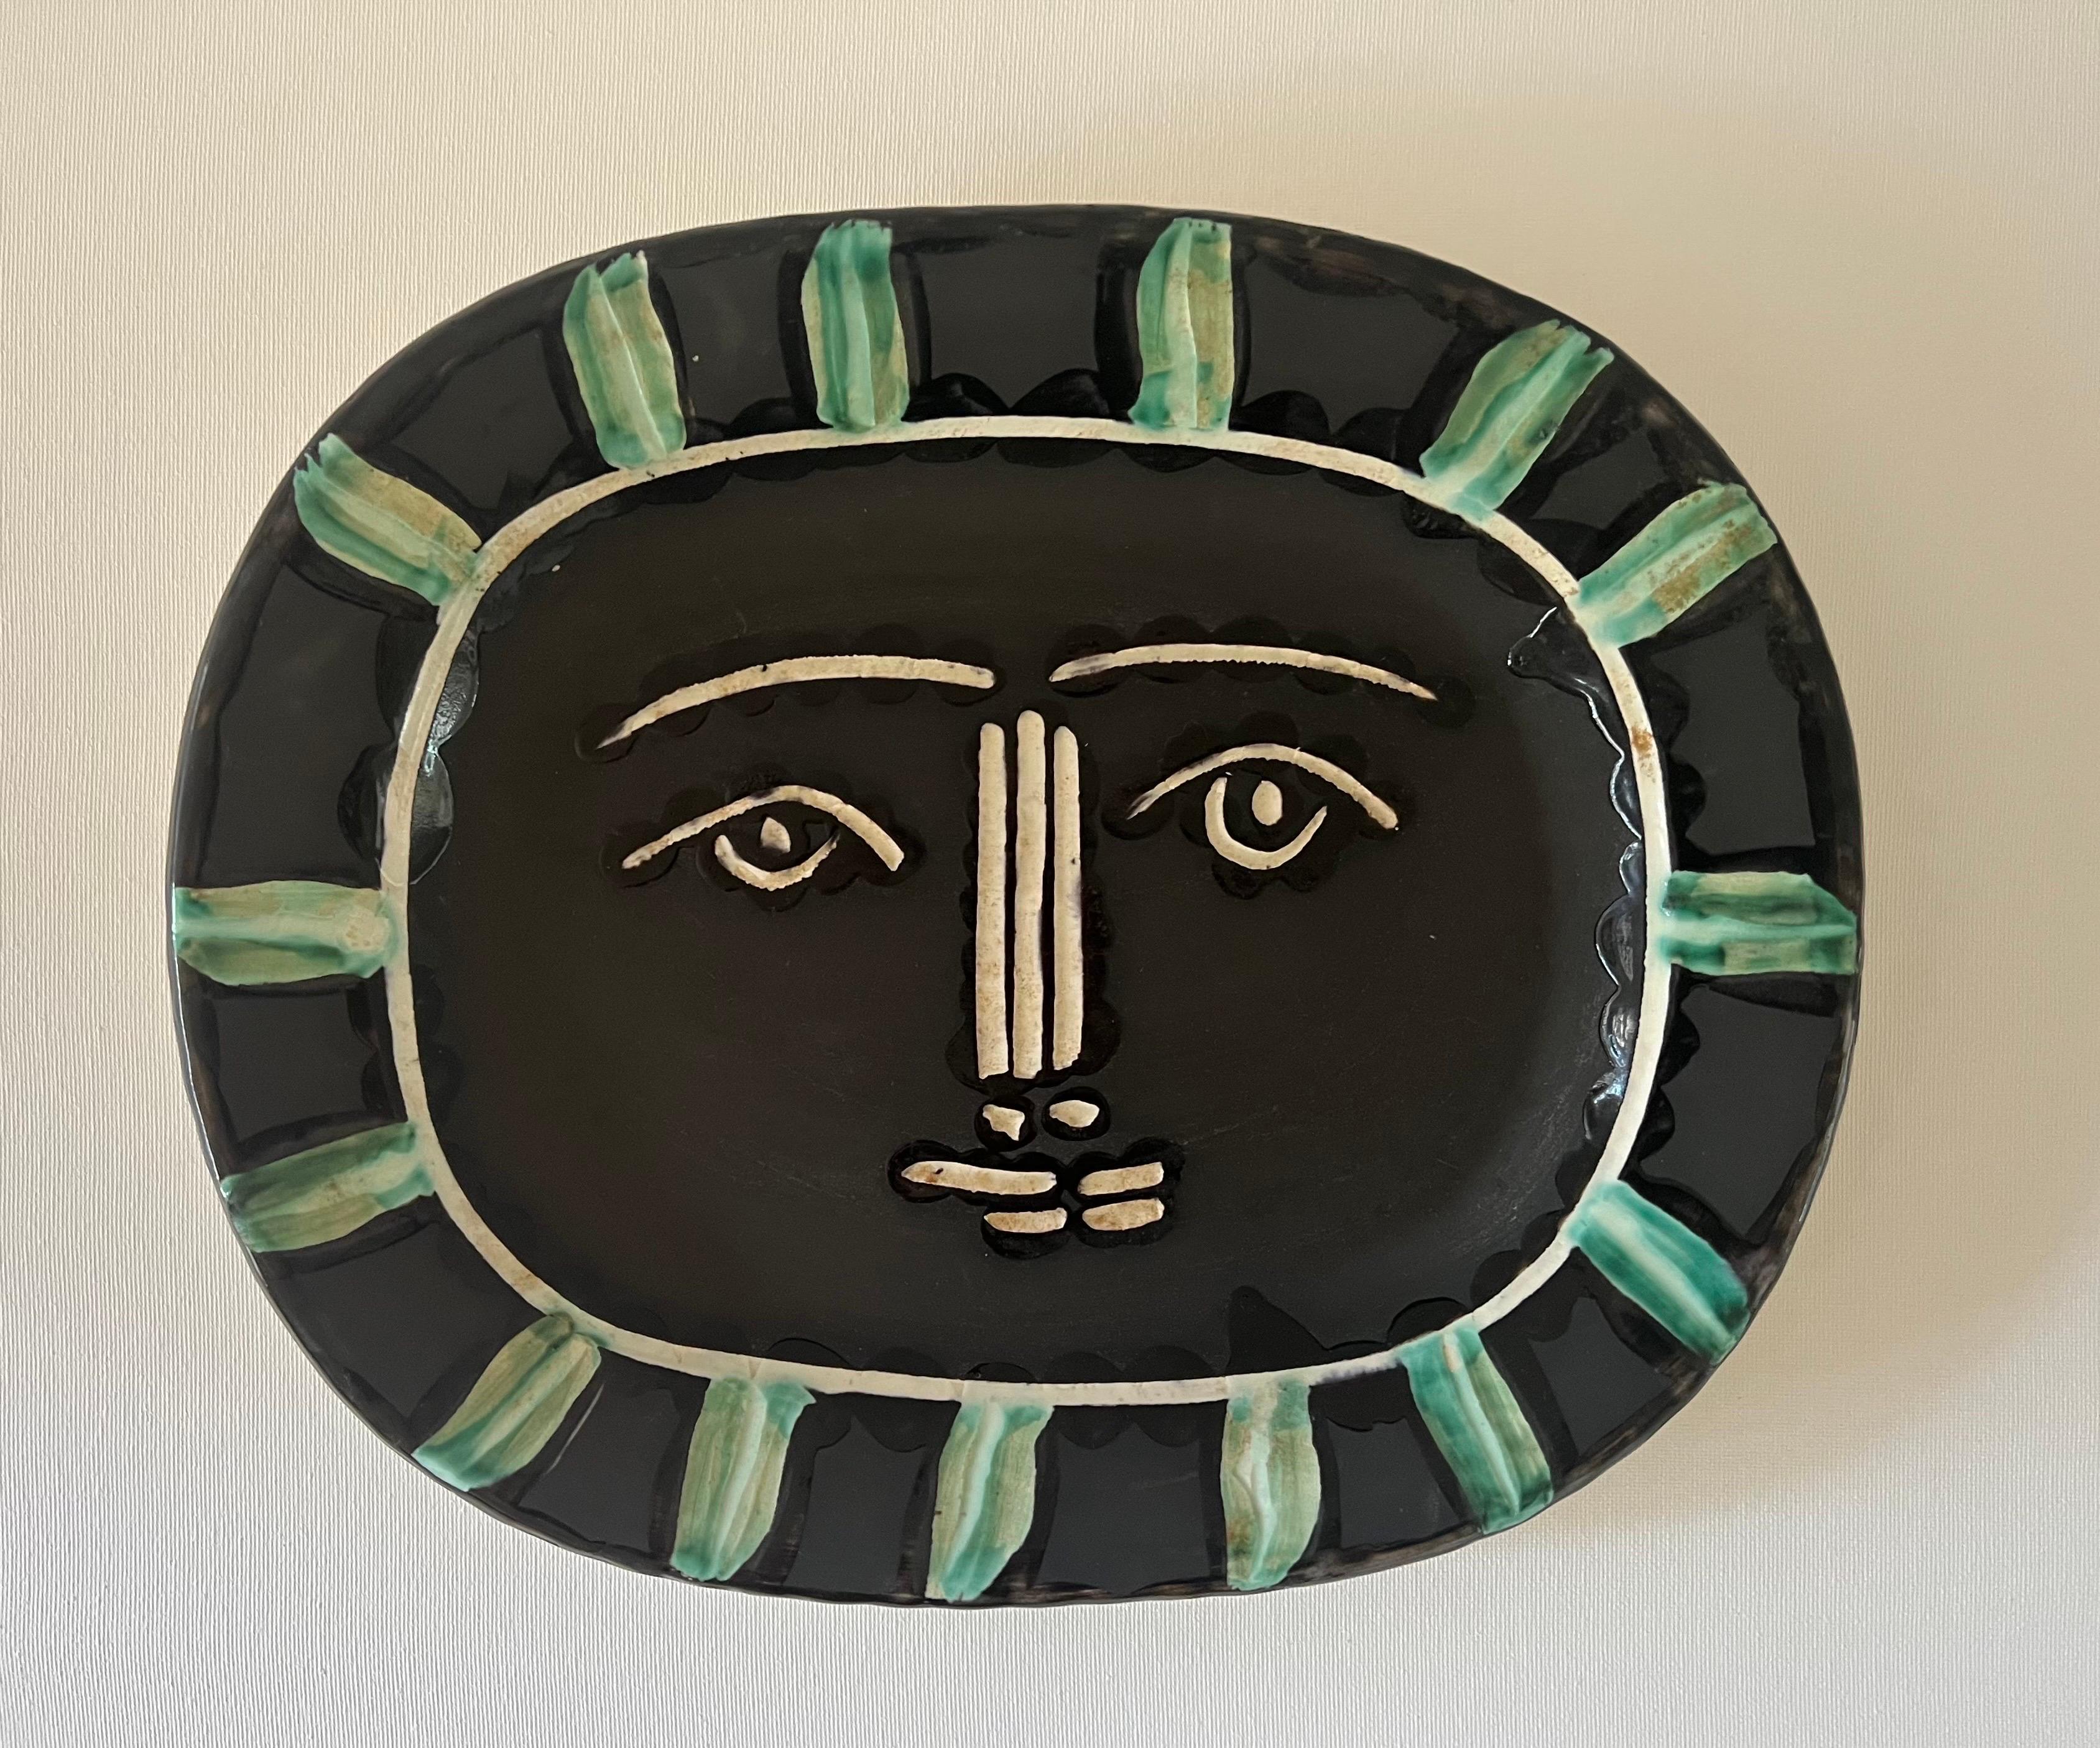 La plaque de céramique gravée et peinte au pinceau, Visage Gris, est l'une des pièces les plus emblématiques créées par Pablo Picasso (1881 - 1973) dans l'atelier de Madoura à Vallauris, en France. On dit que 